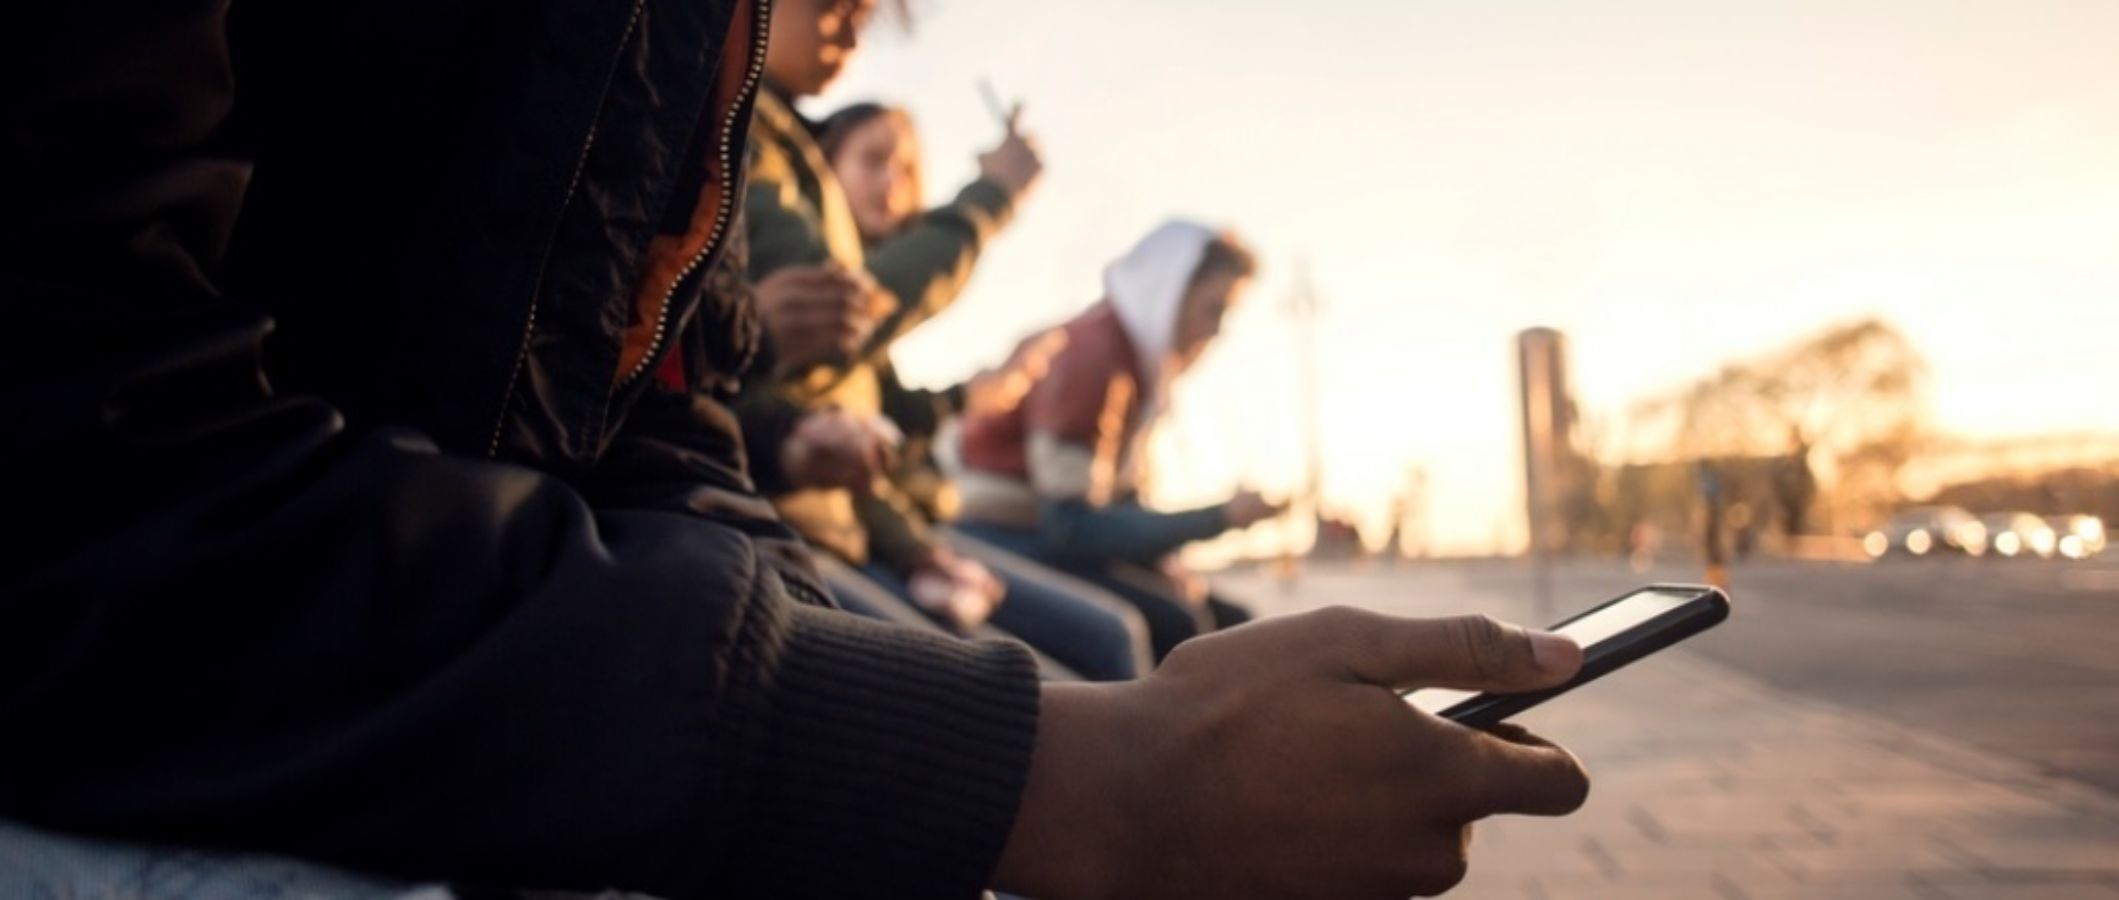 Los adolescentes, cada vez más adictos al móvil e internet, y cada vez más temprano. Foto: Europa Press